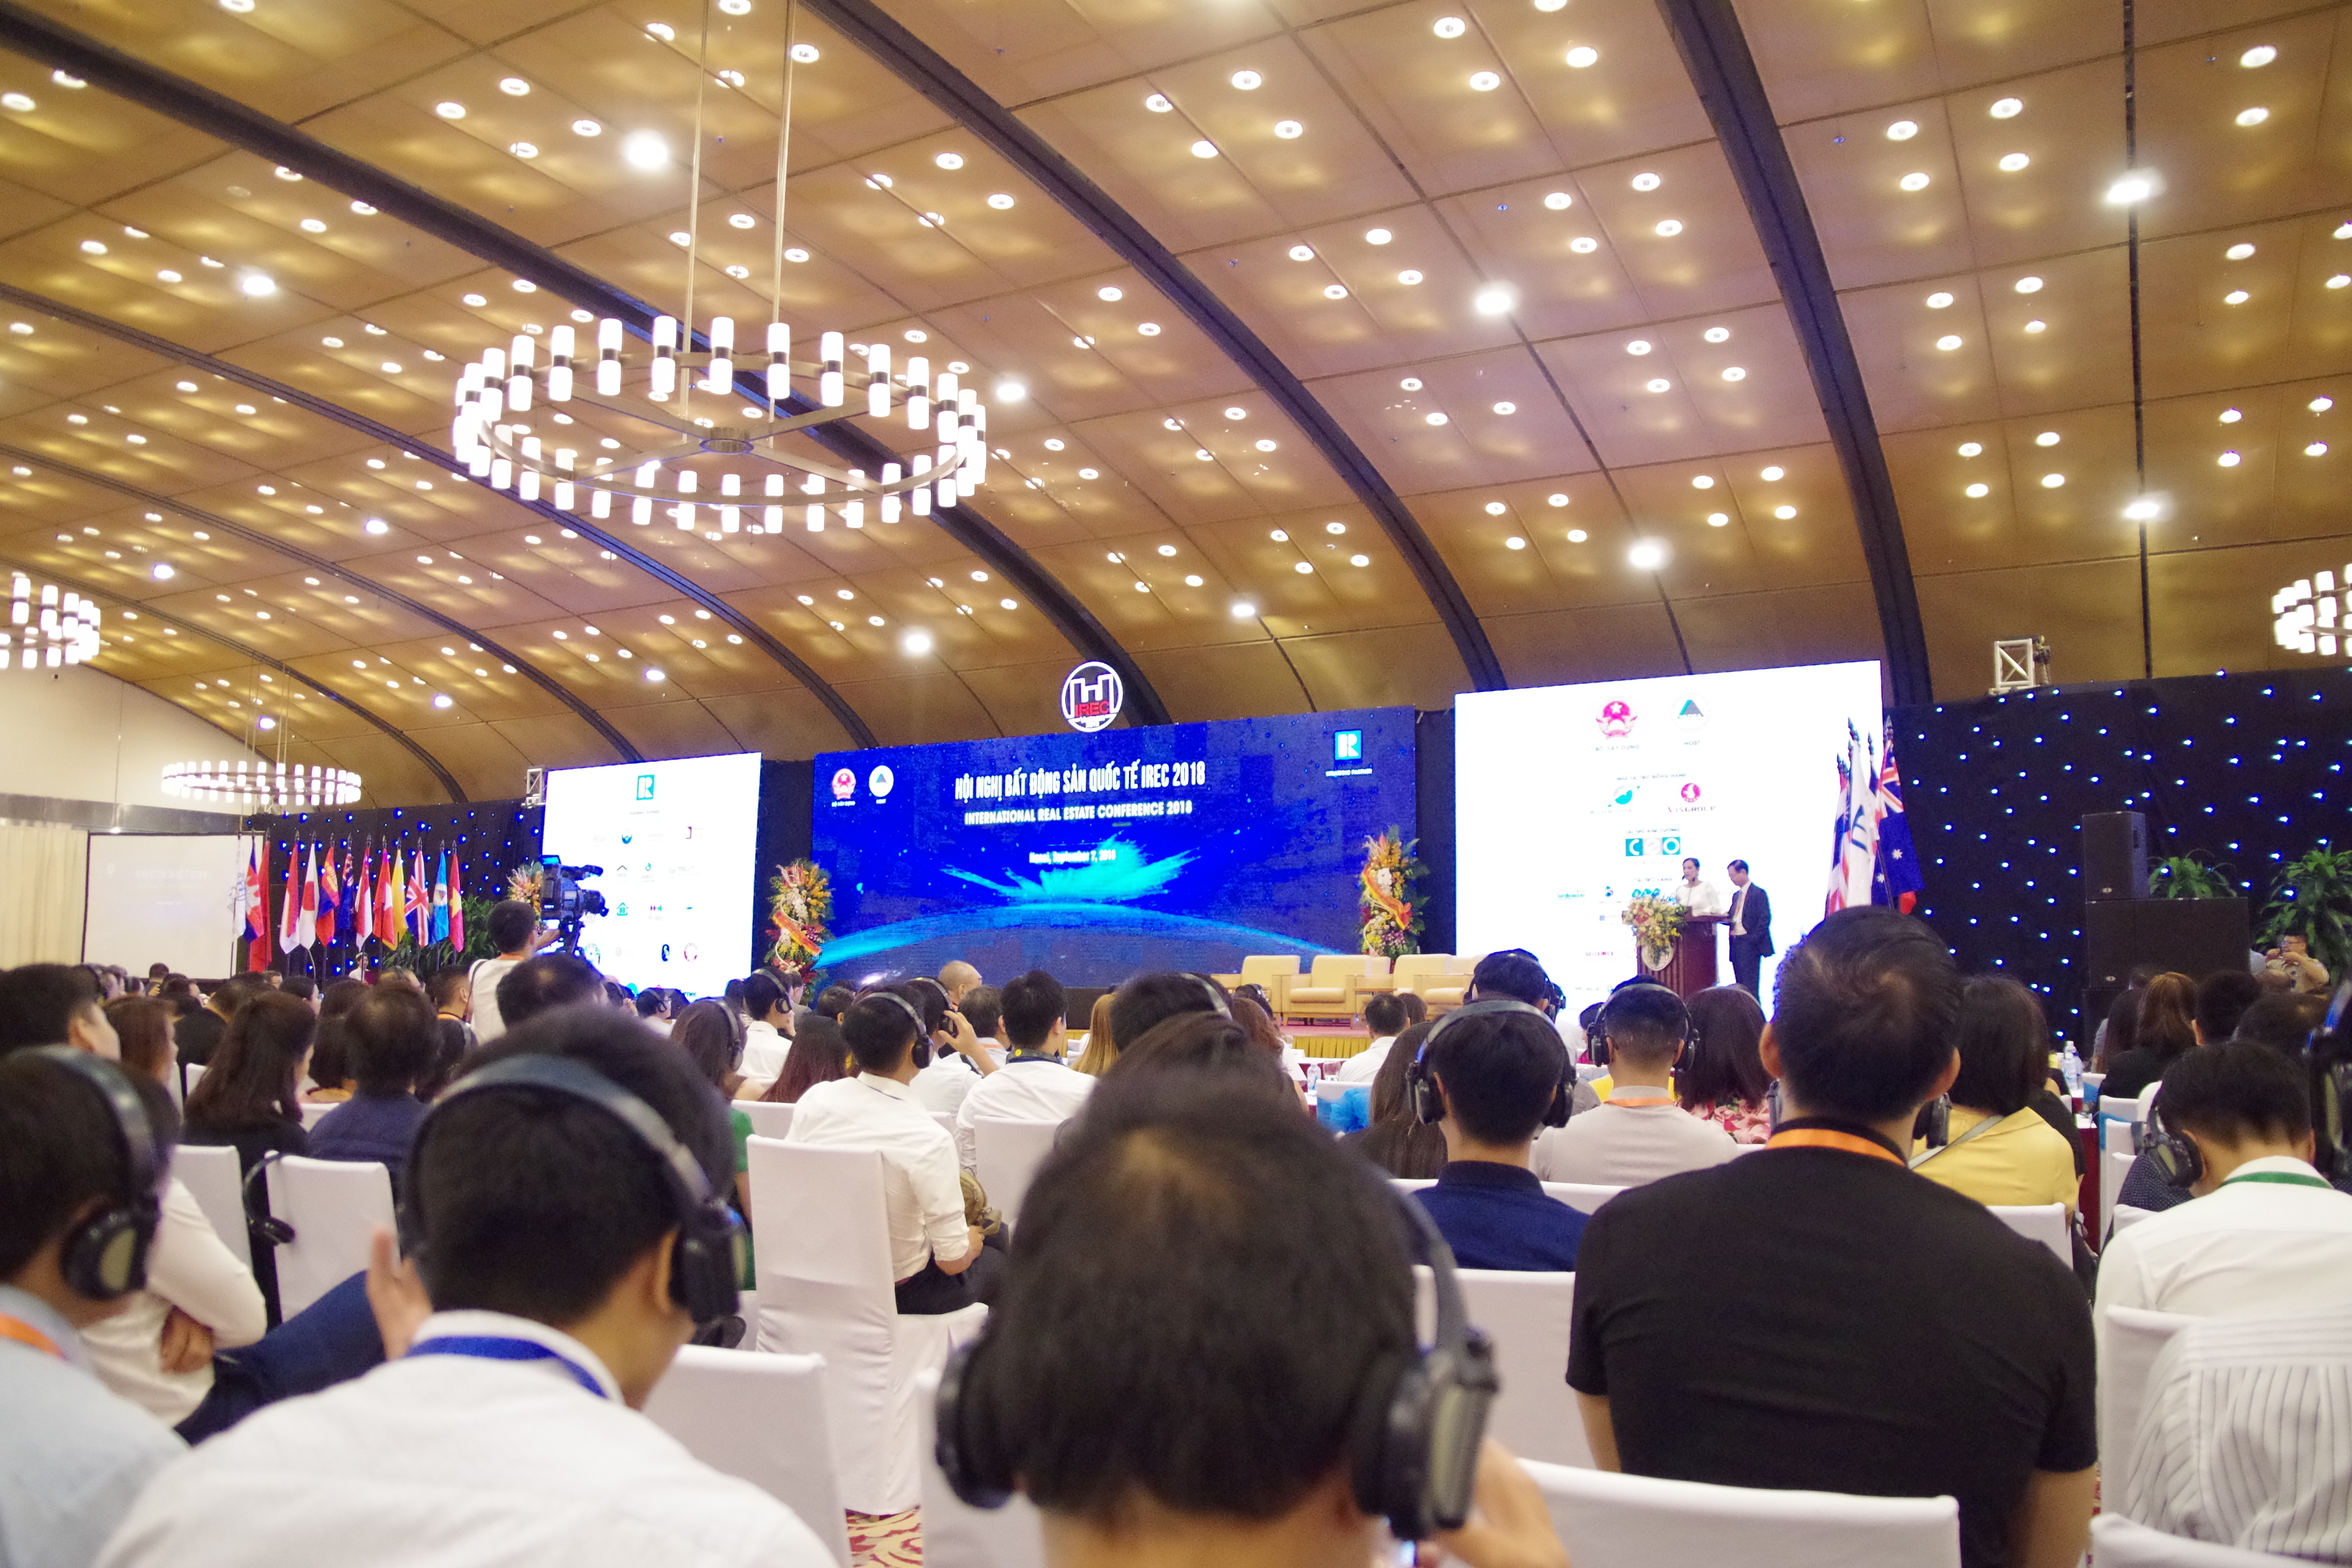 200 CBNV Hải Phát Land tham dự Hội nghị Bất động sản quốc tế IREC 2018